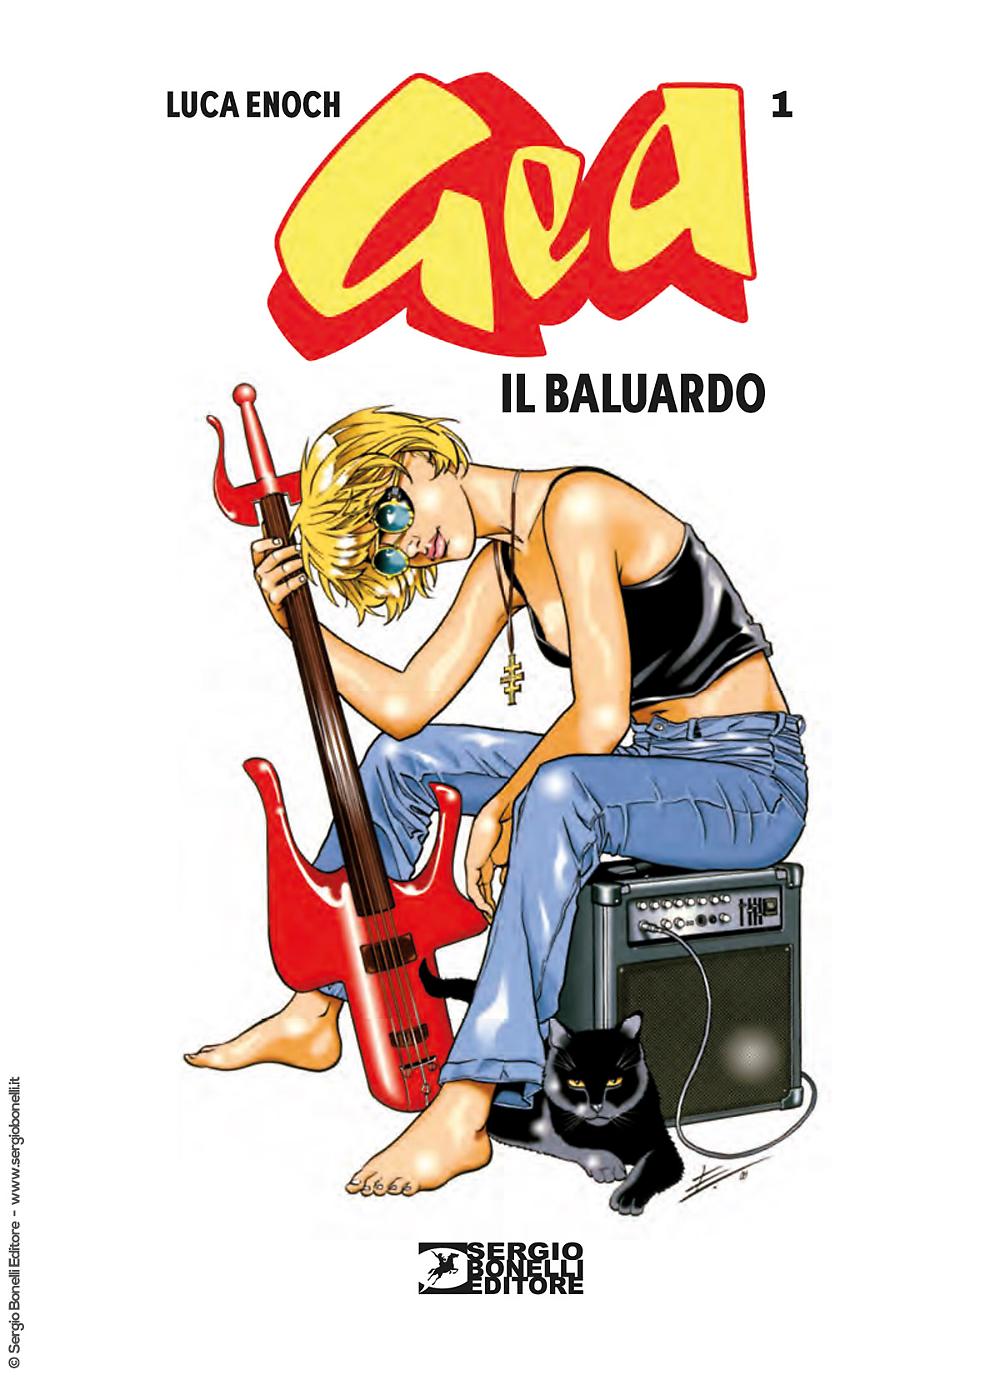 Sergio Bonelli Editore presents GEA 1. IL BALUARDO by Luca Enoch – re-creation